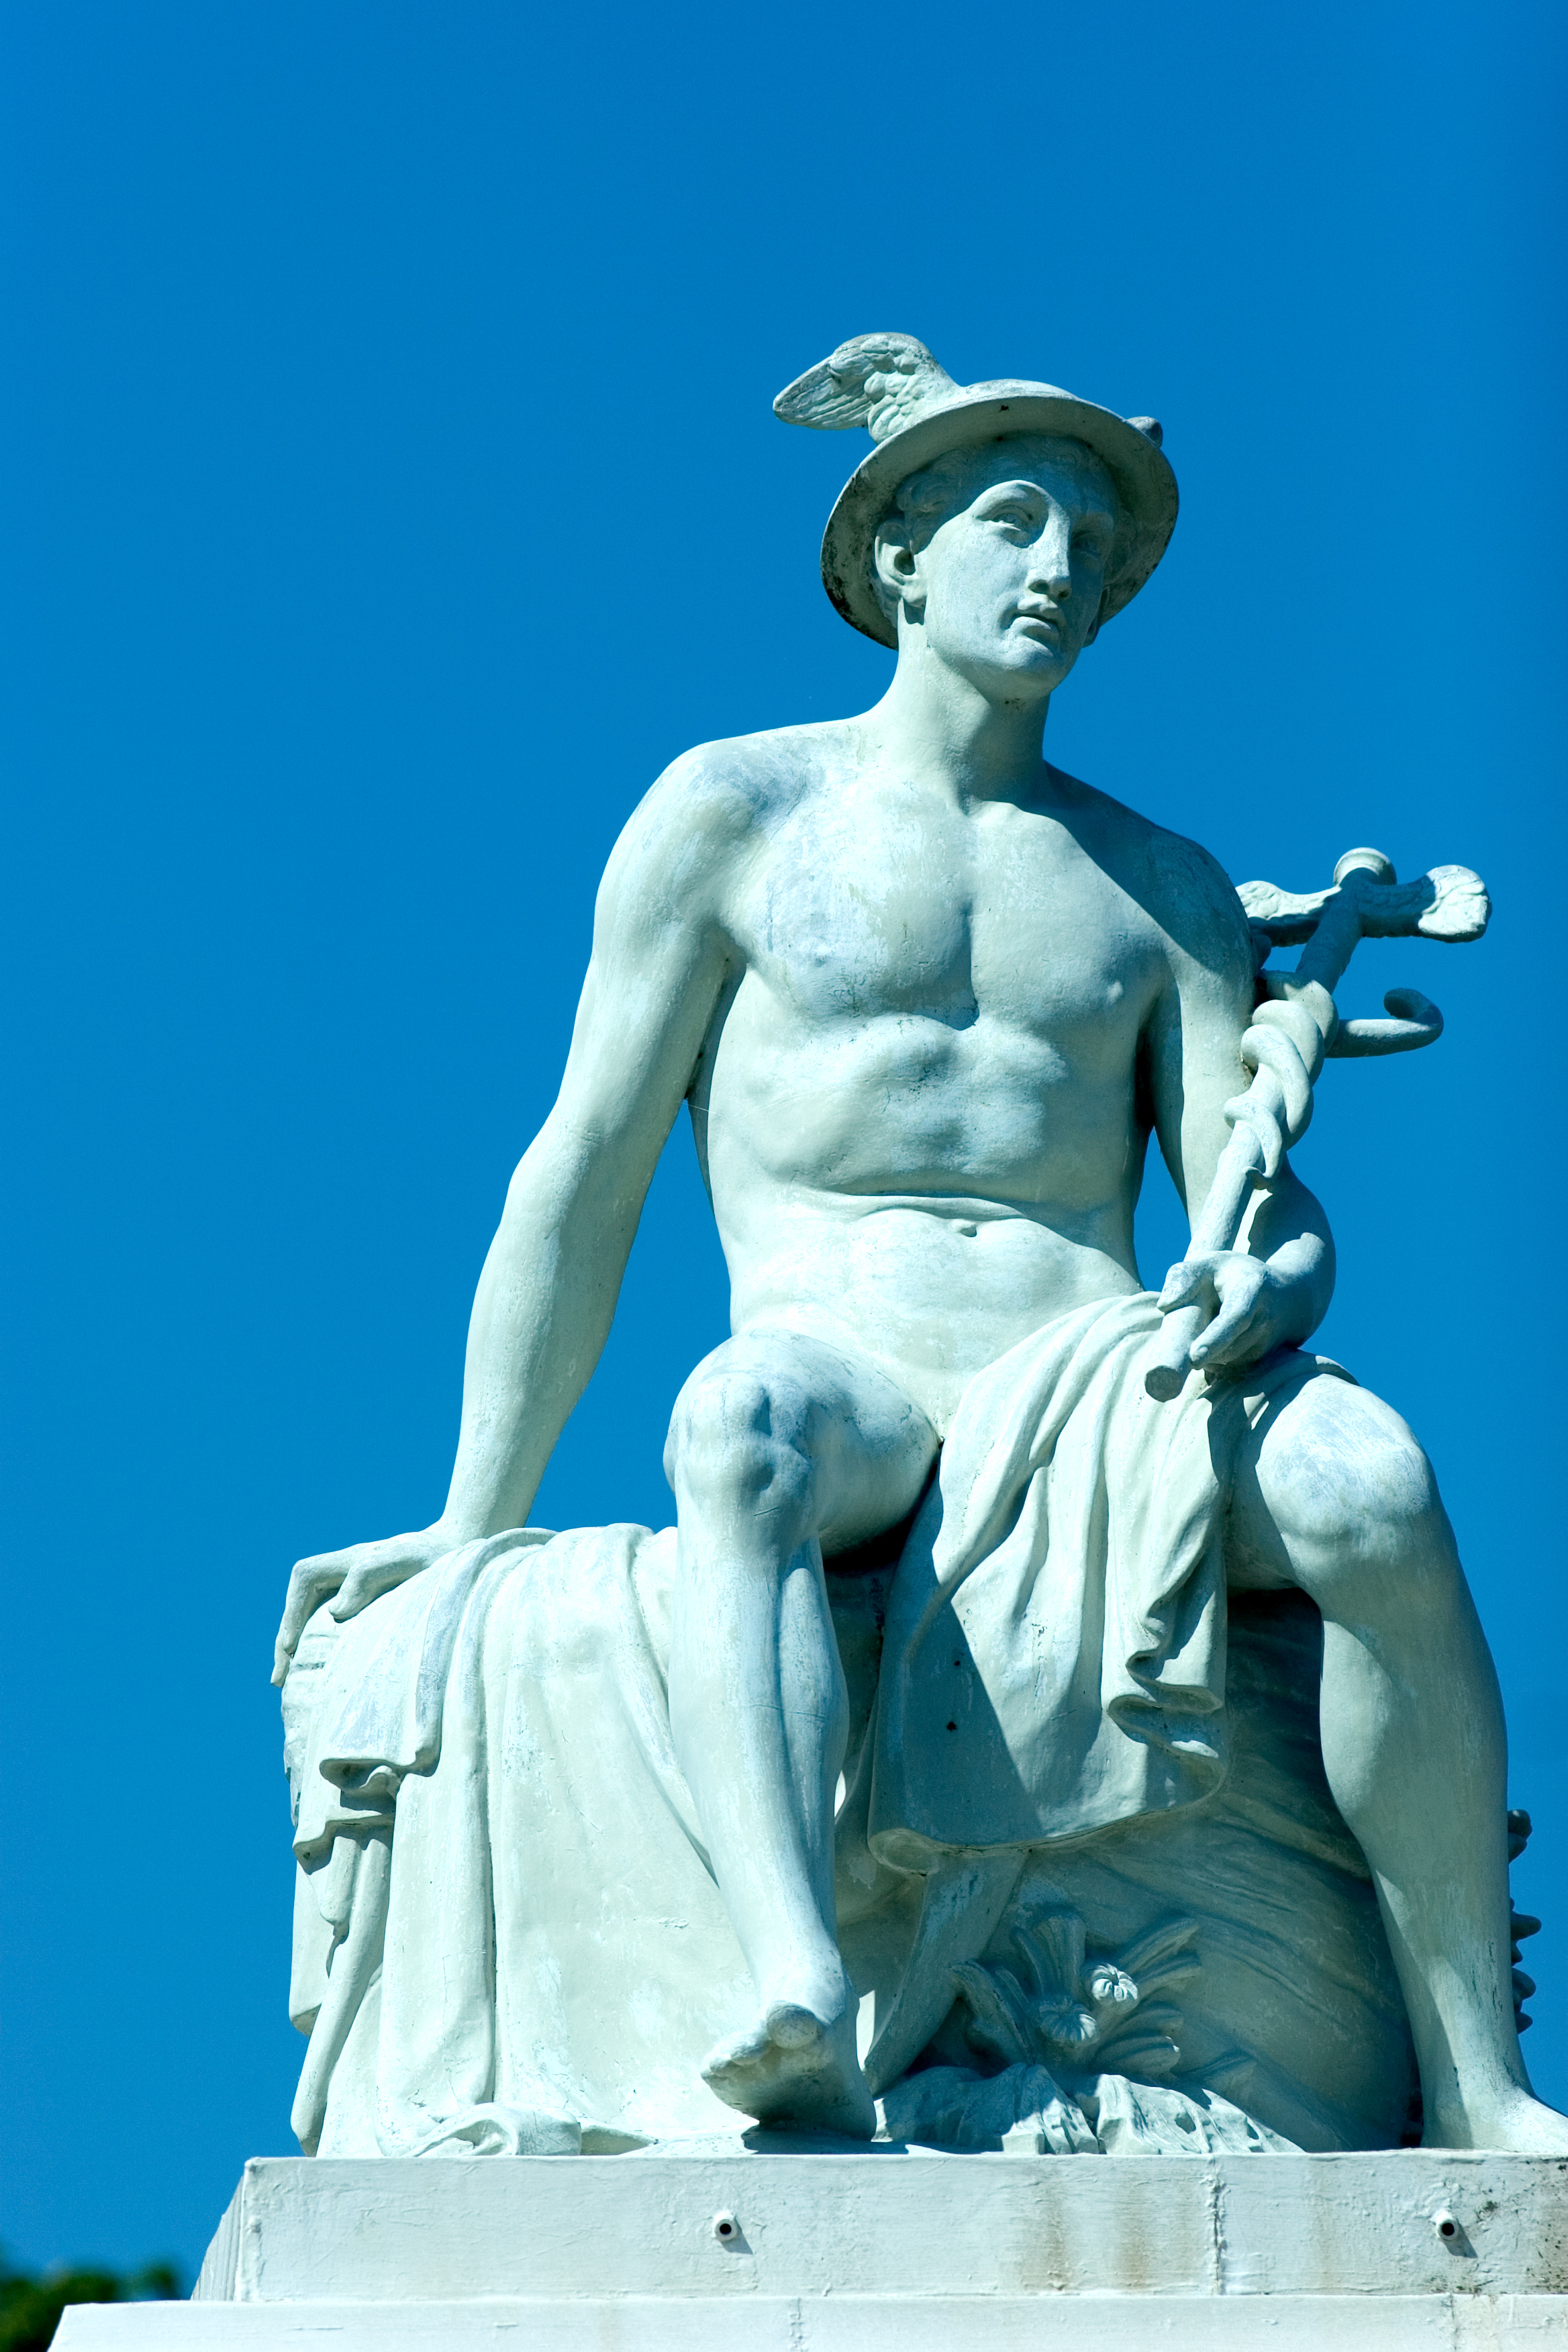 Der griechische Gott Hermes wird oft mit dem Kadaver dargestellt.